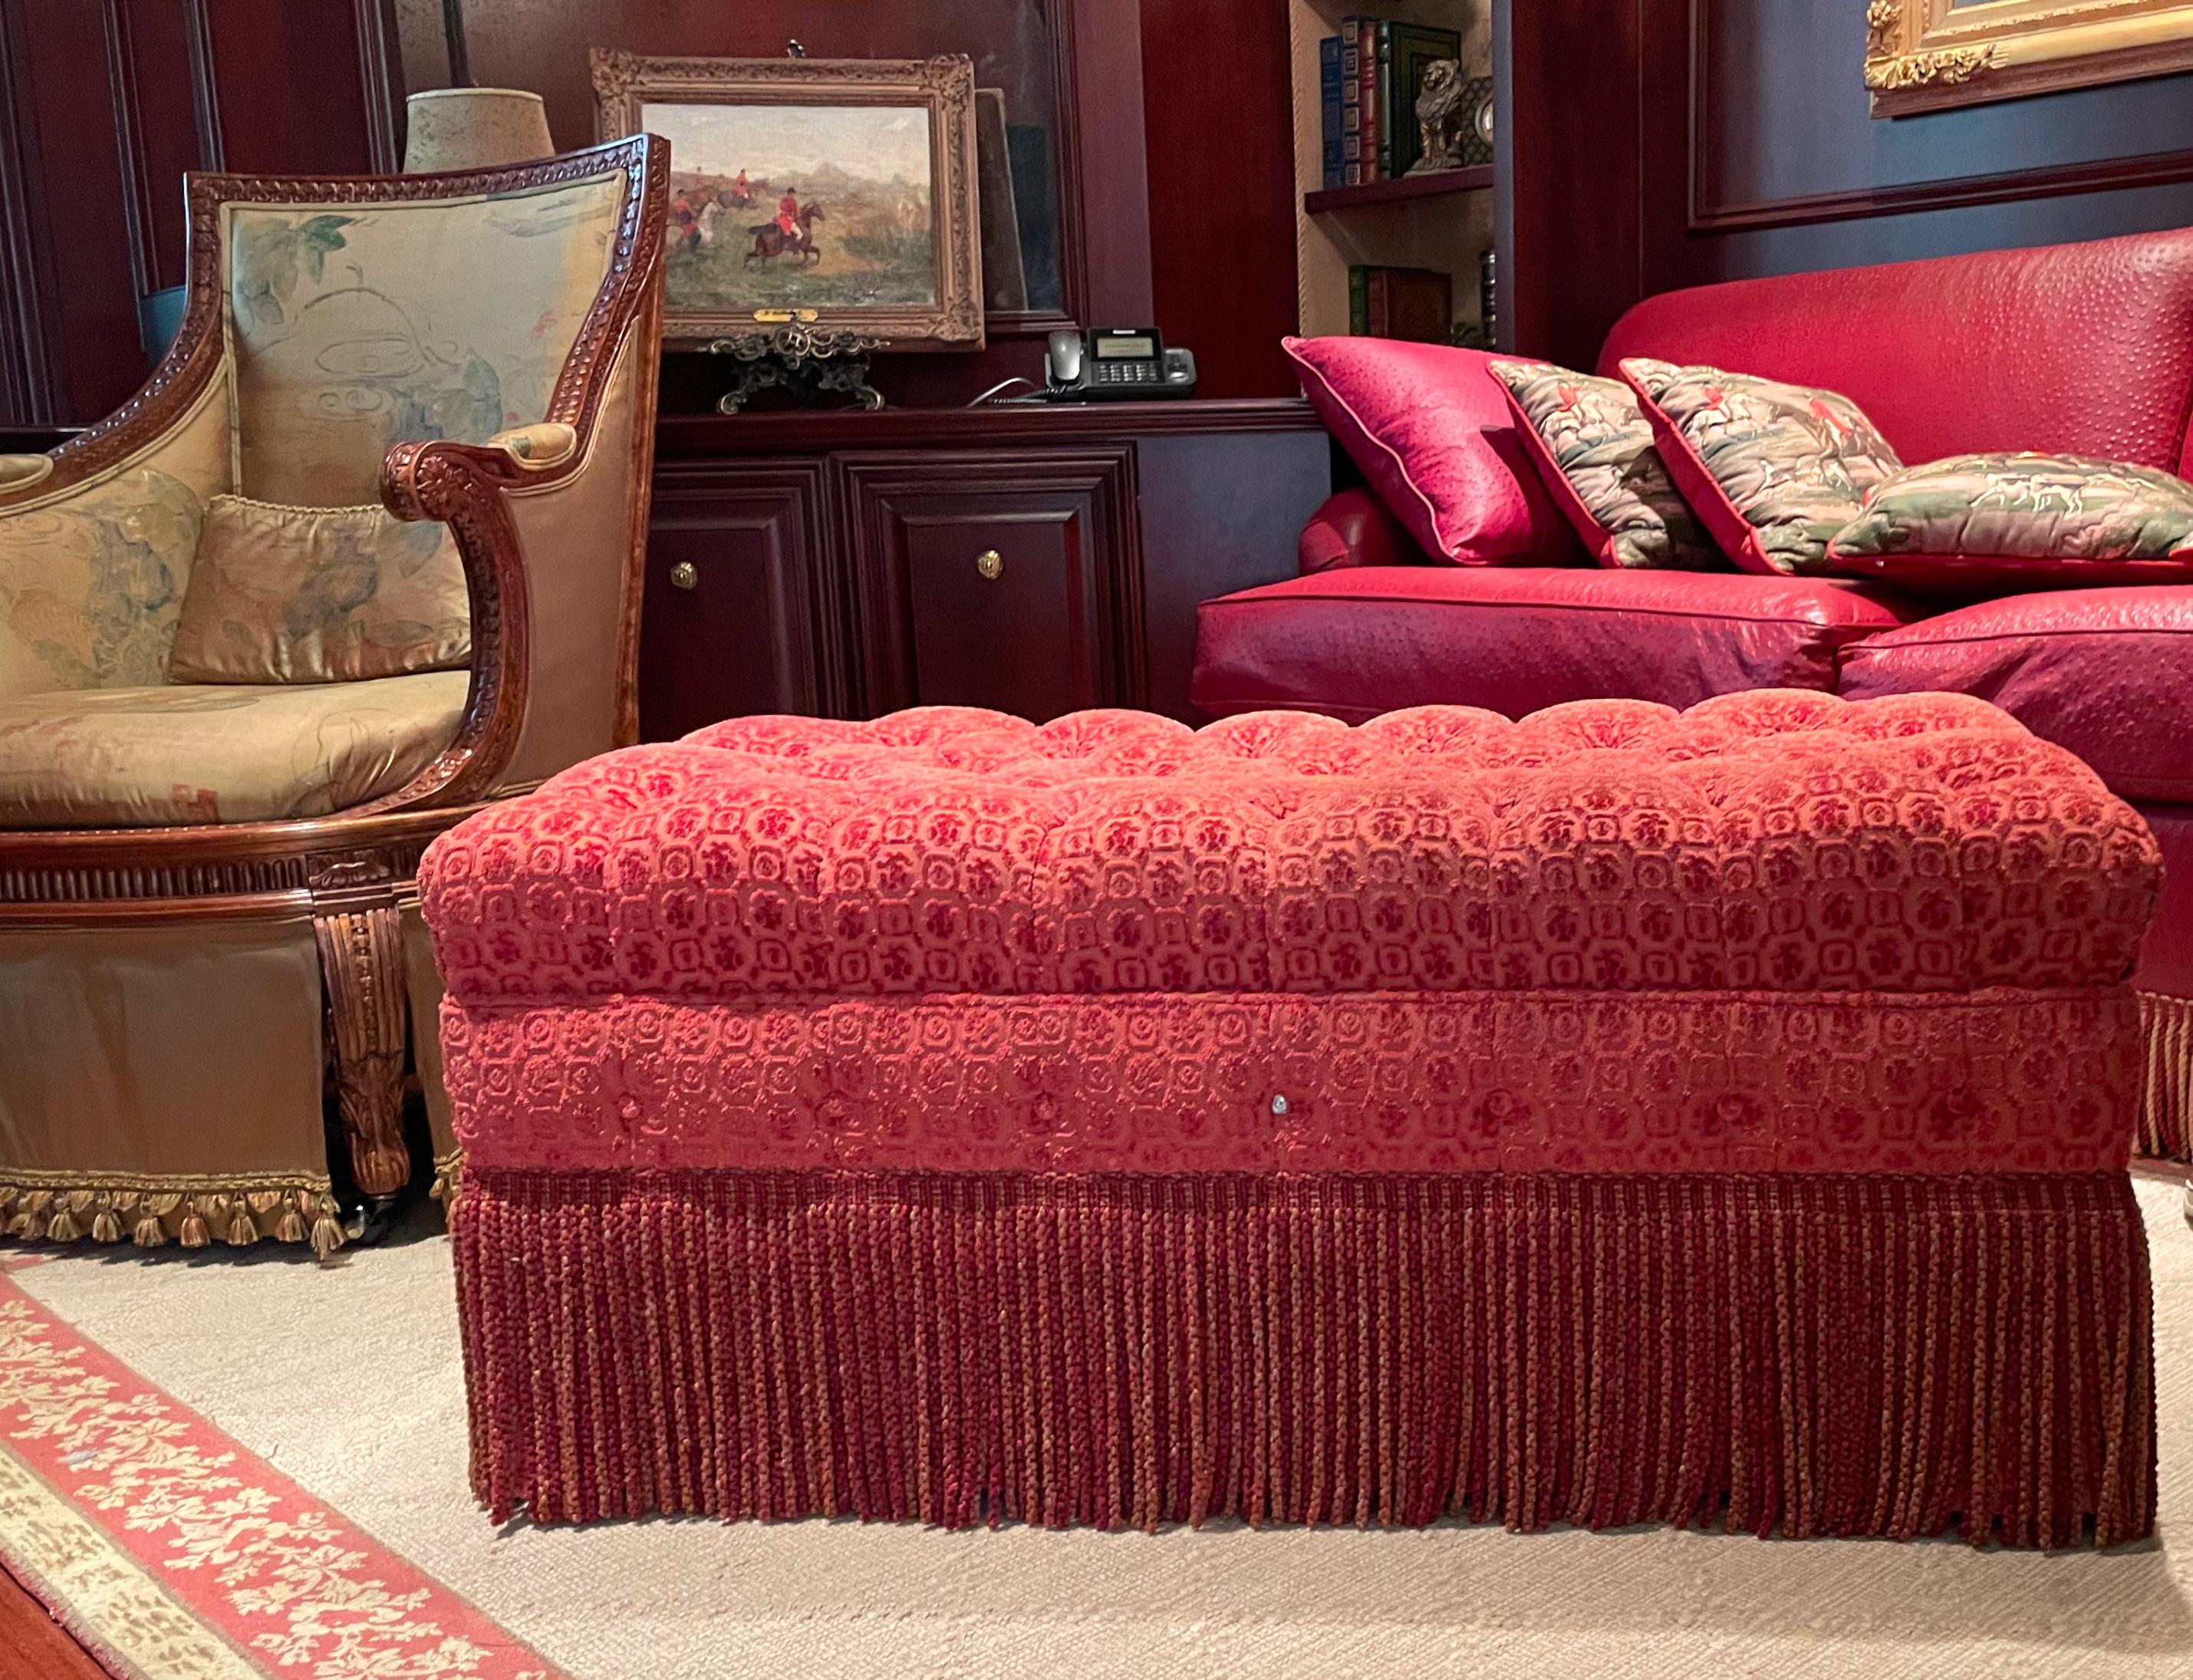 
Traditional Rust Cut-Velvet Tufted Upholstered Ottoman 
Rechteckig, der untere Teil mit einem Fransen-Rock. Höhe 43,18 cm (17 in.), Breite 106,68 cm (42 in.), Tiefe 63,5 cm (25 in.)
